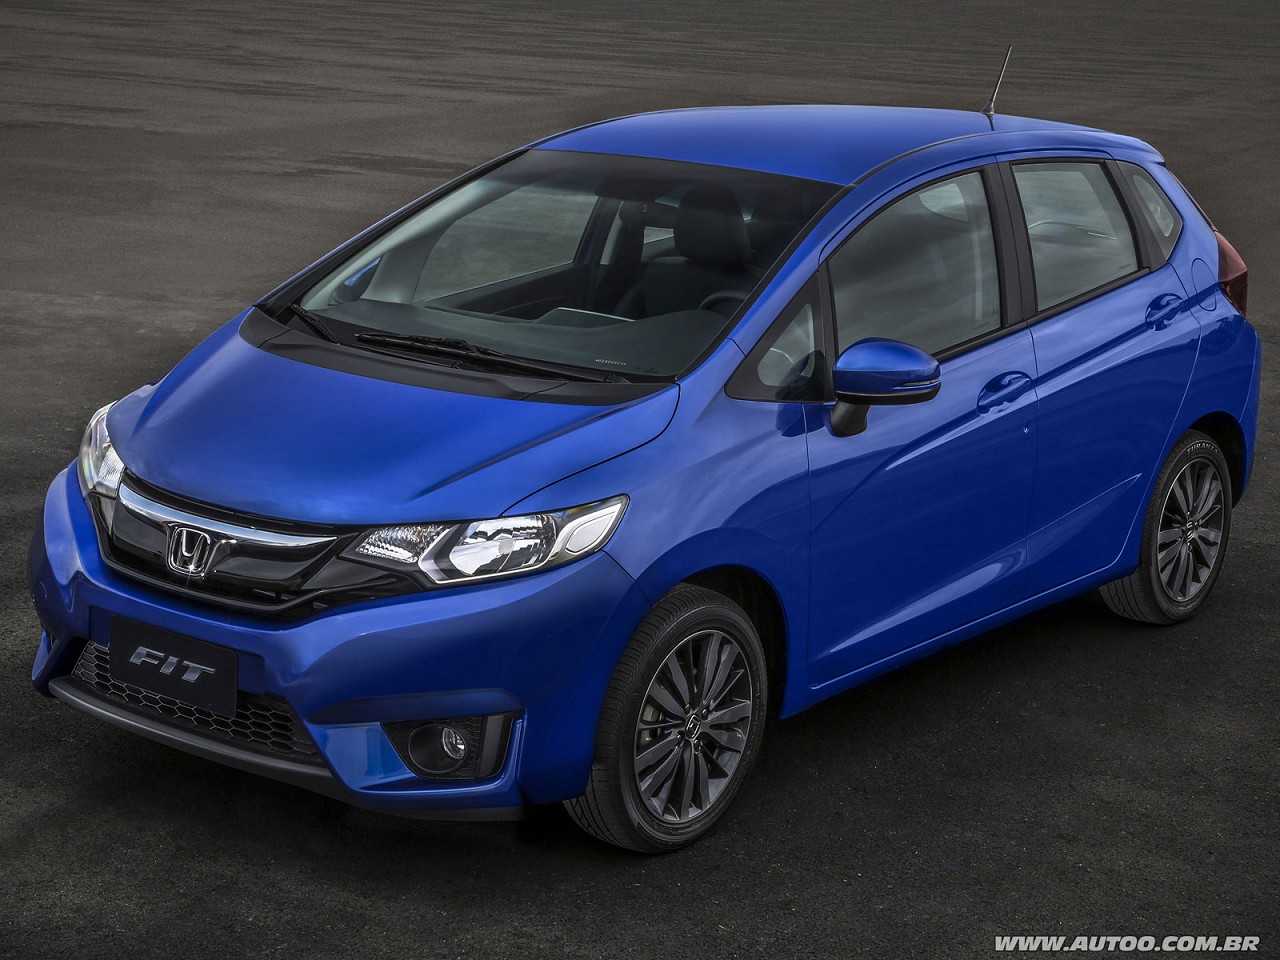 Compra com isenção: Honda Fit ou Toyota Corolla?